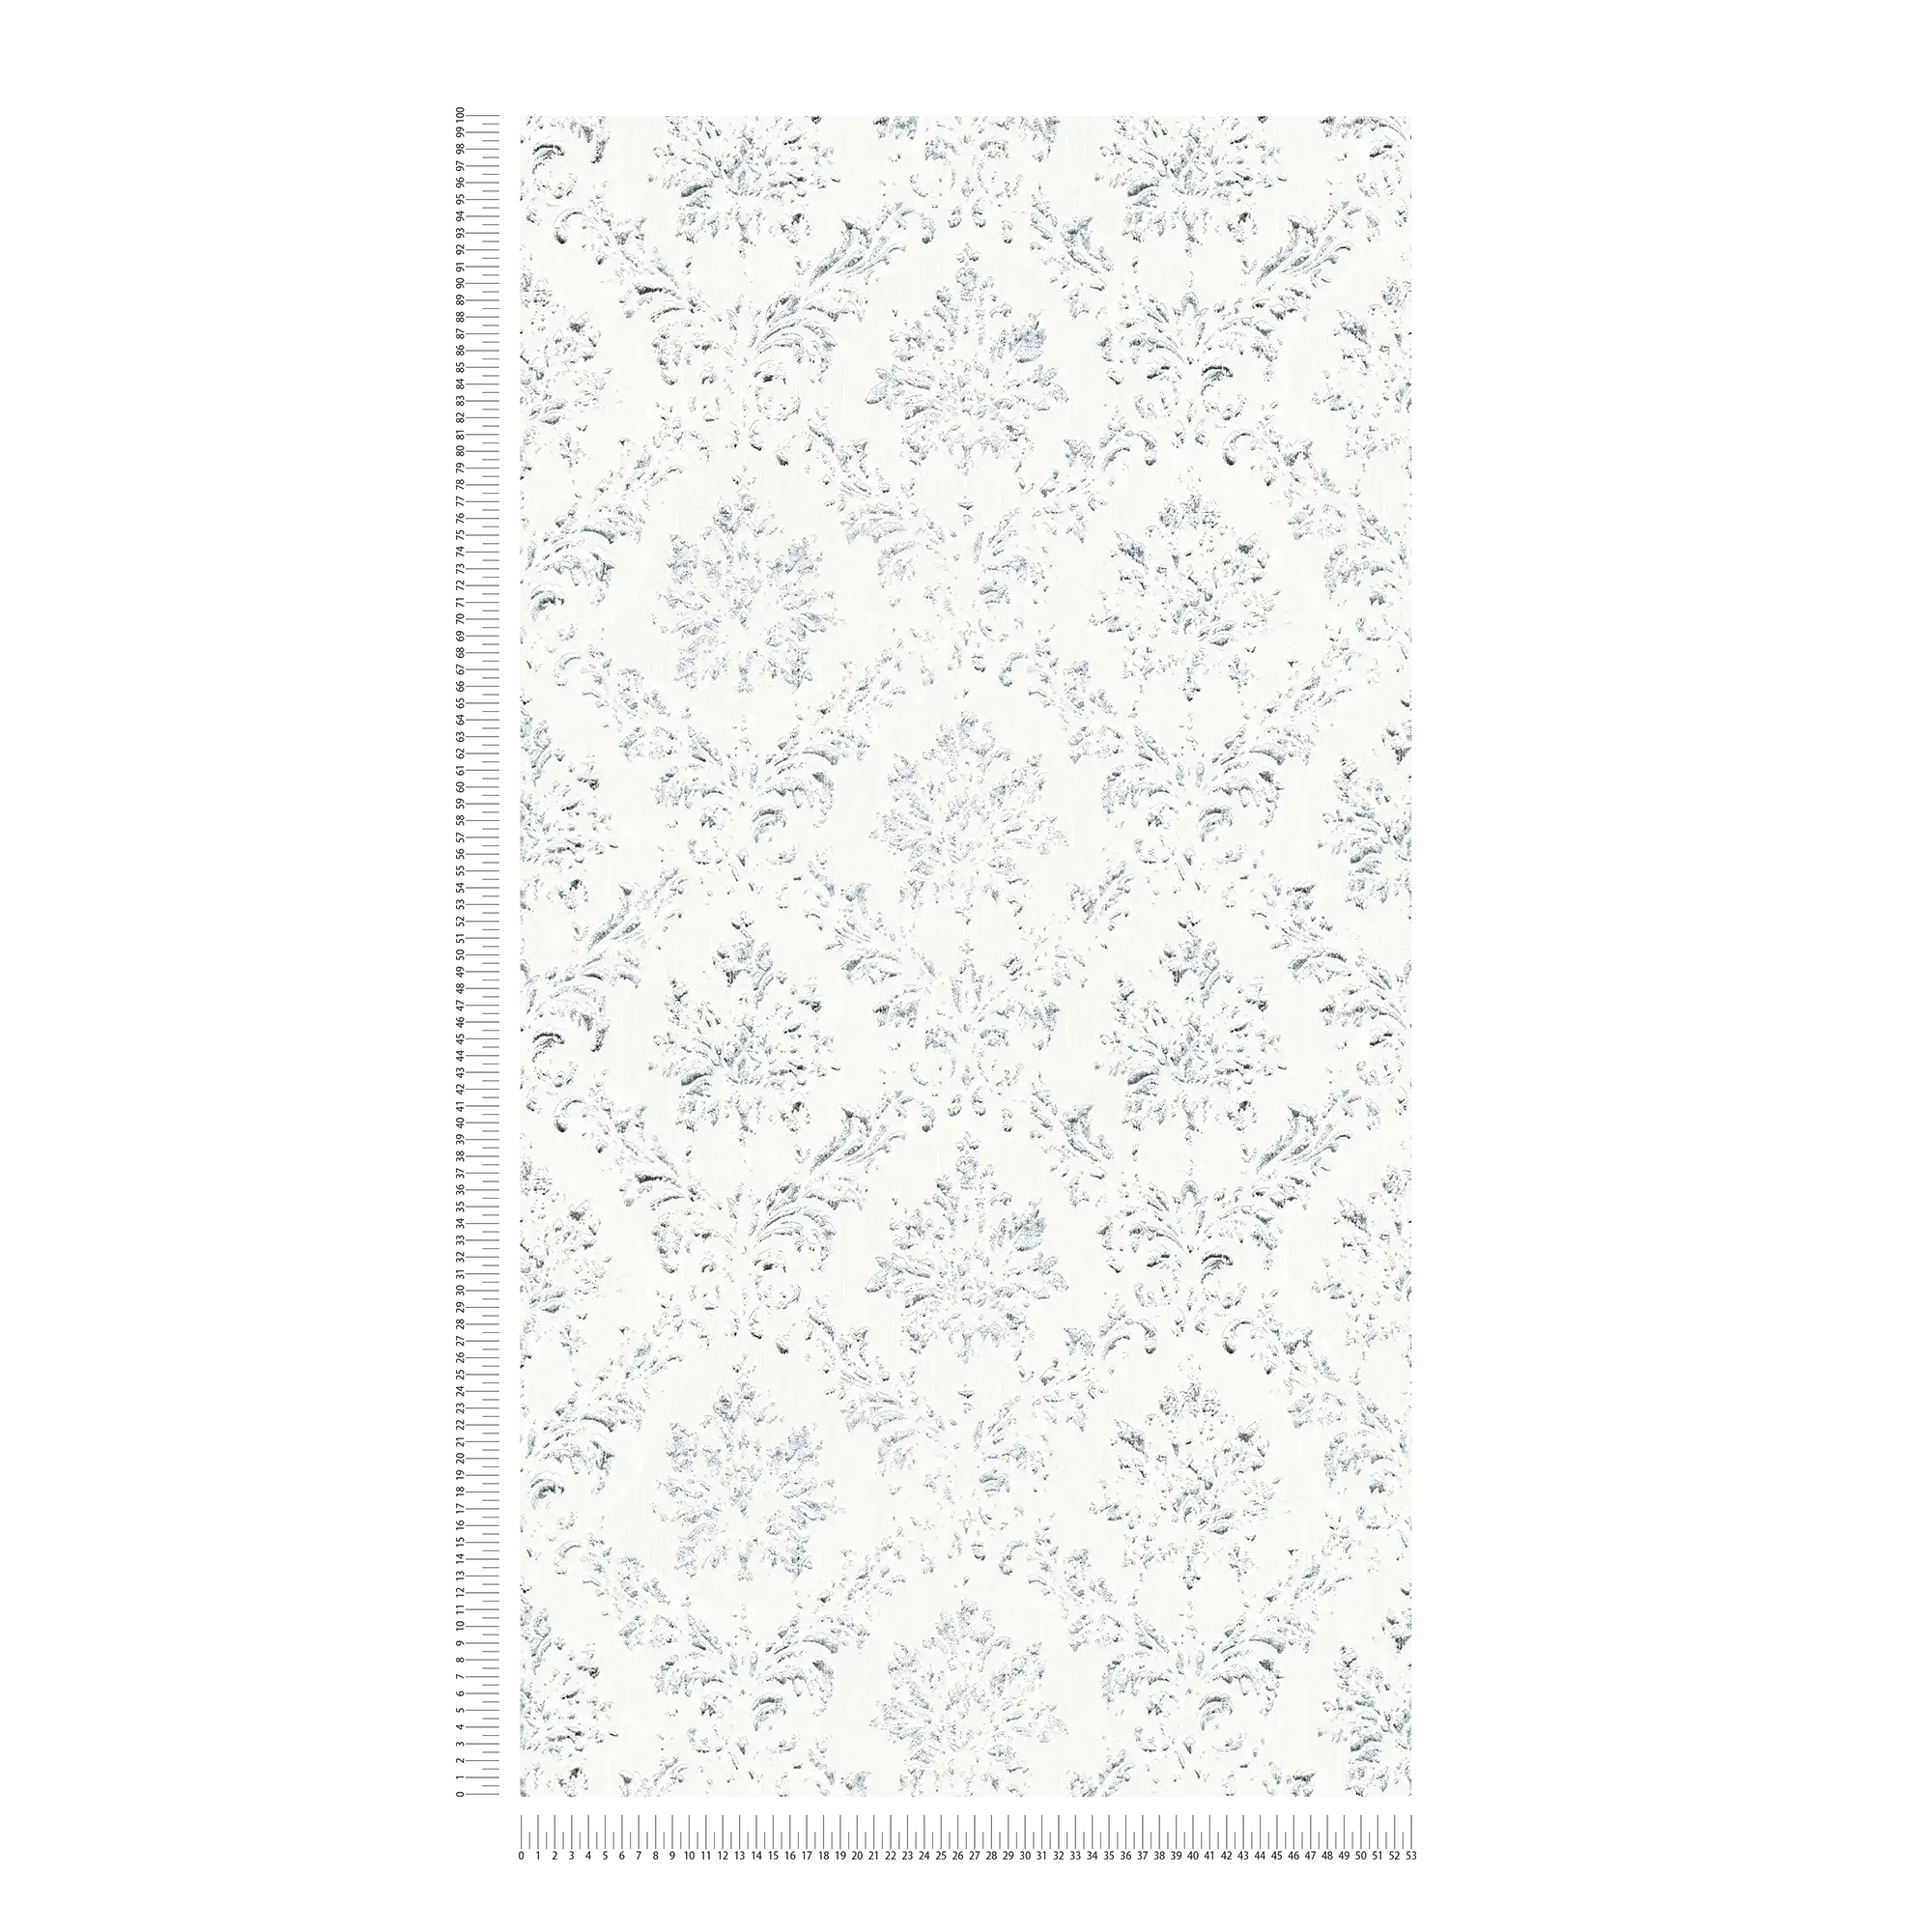             Carta da parati con ornamenti d'argento in look used - bianco, argento
        